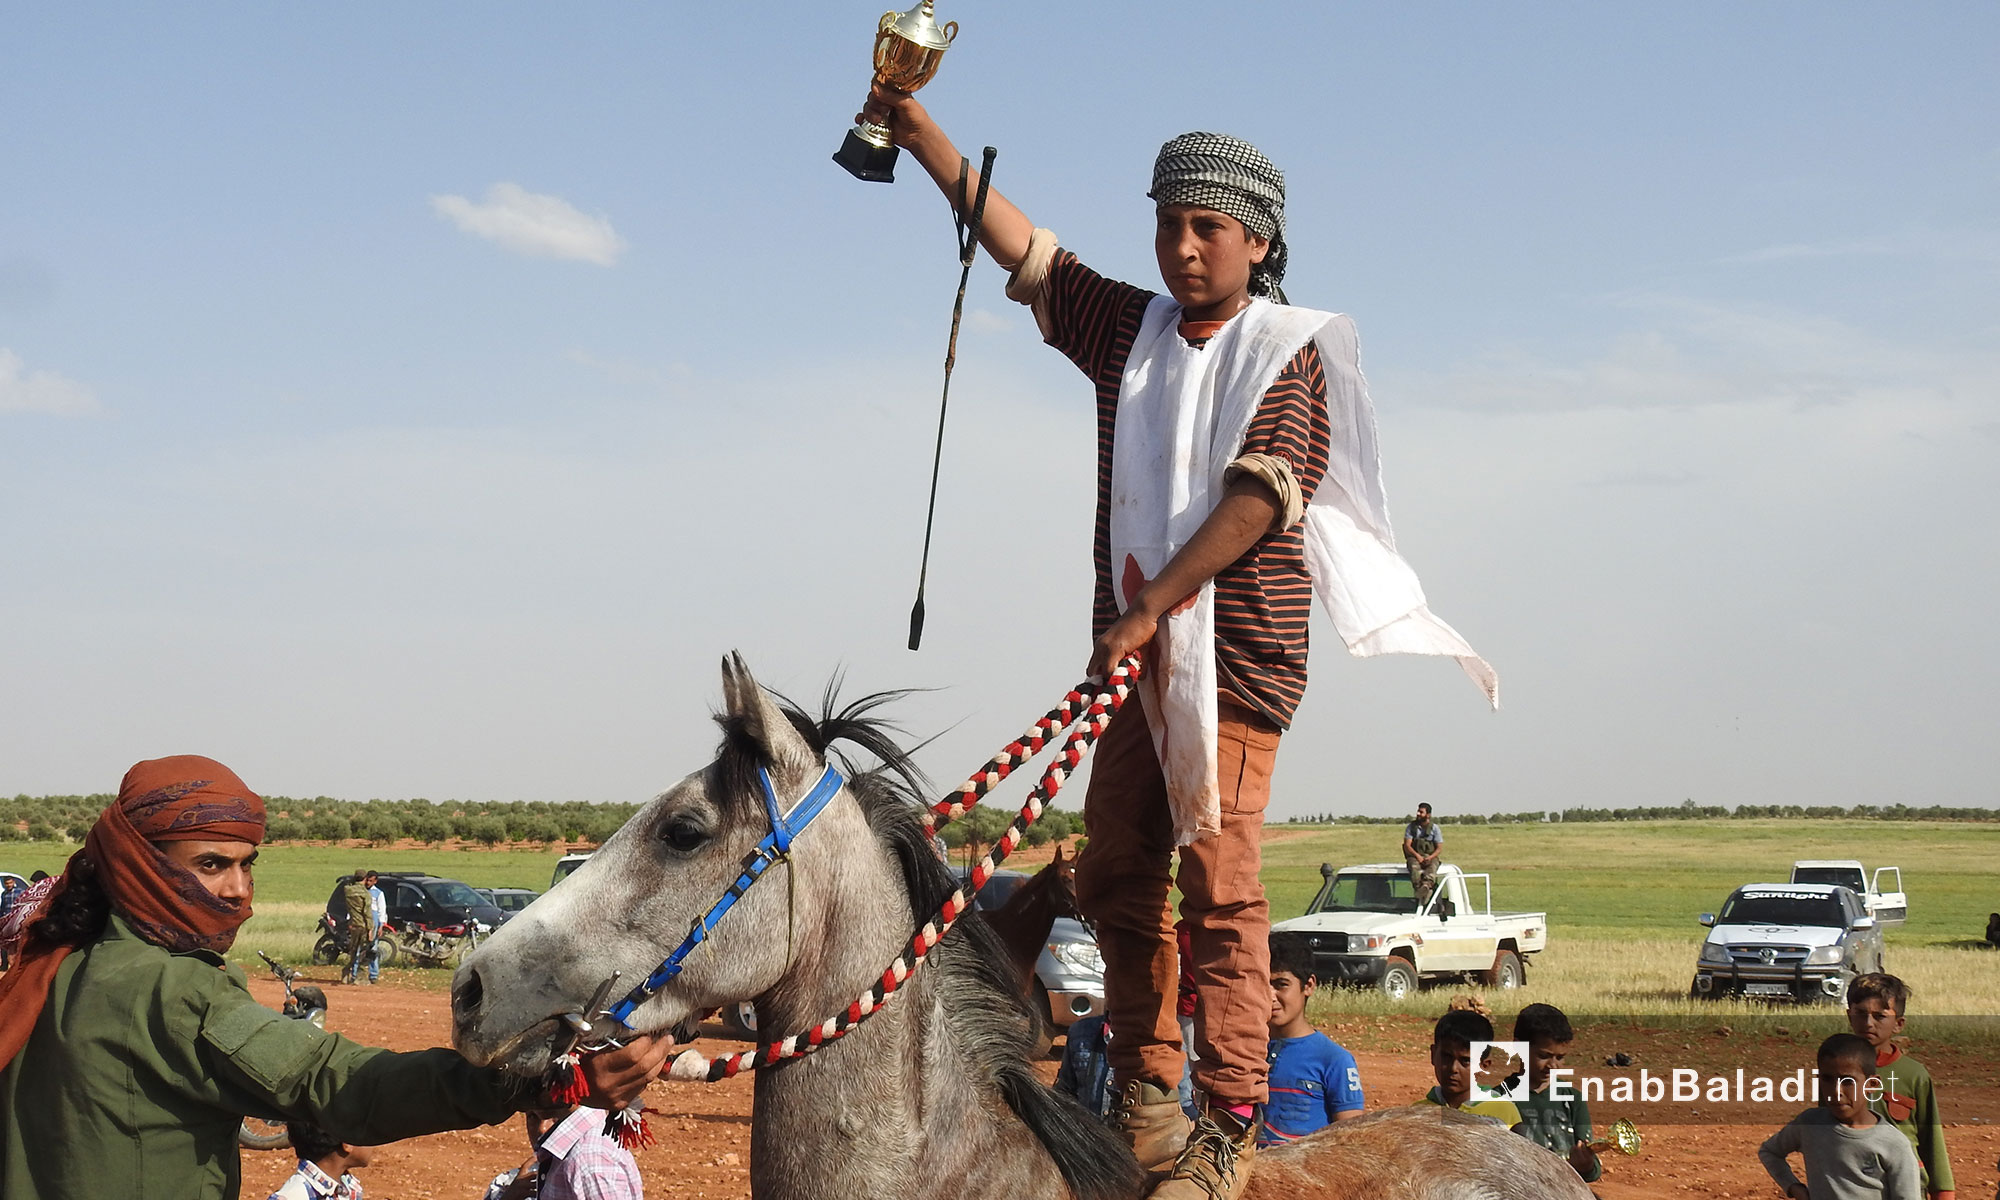 شاب يتوج ضمن مهرجان غصن الزيتون للخيول العربية الاصيلة في قرية نعمان شرقي حلب - 5 أيار 2018 (عنب بلدي)